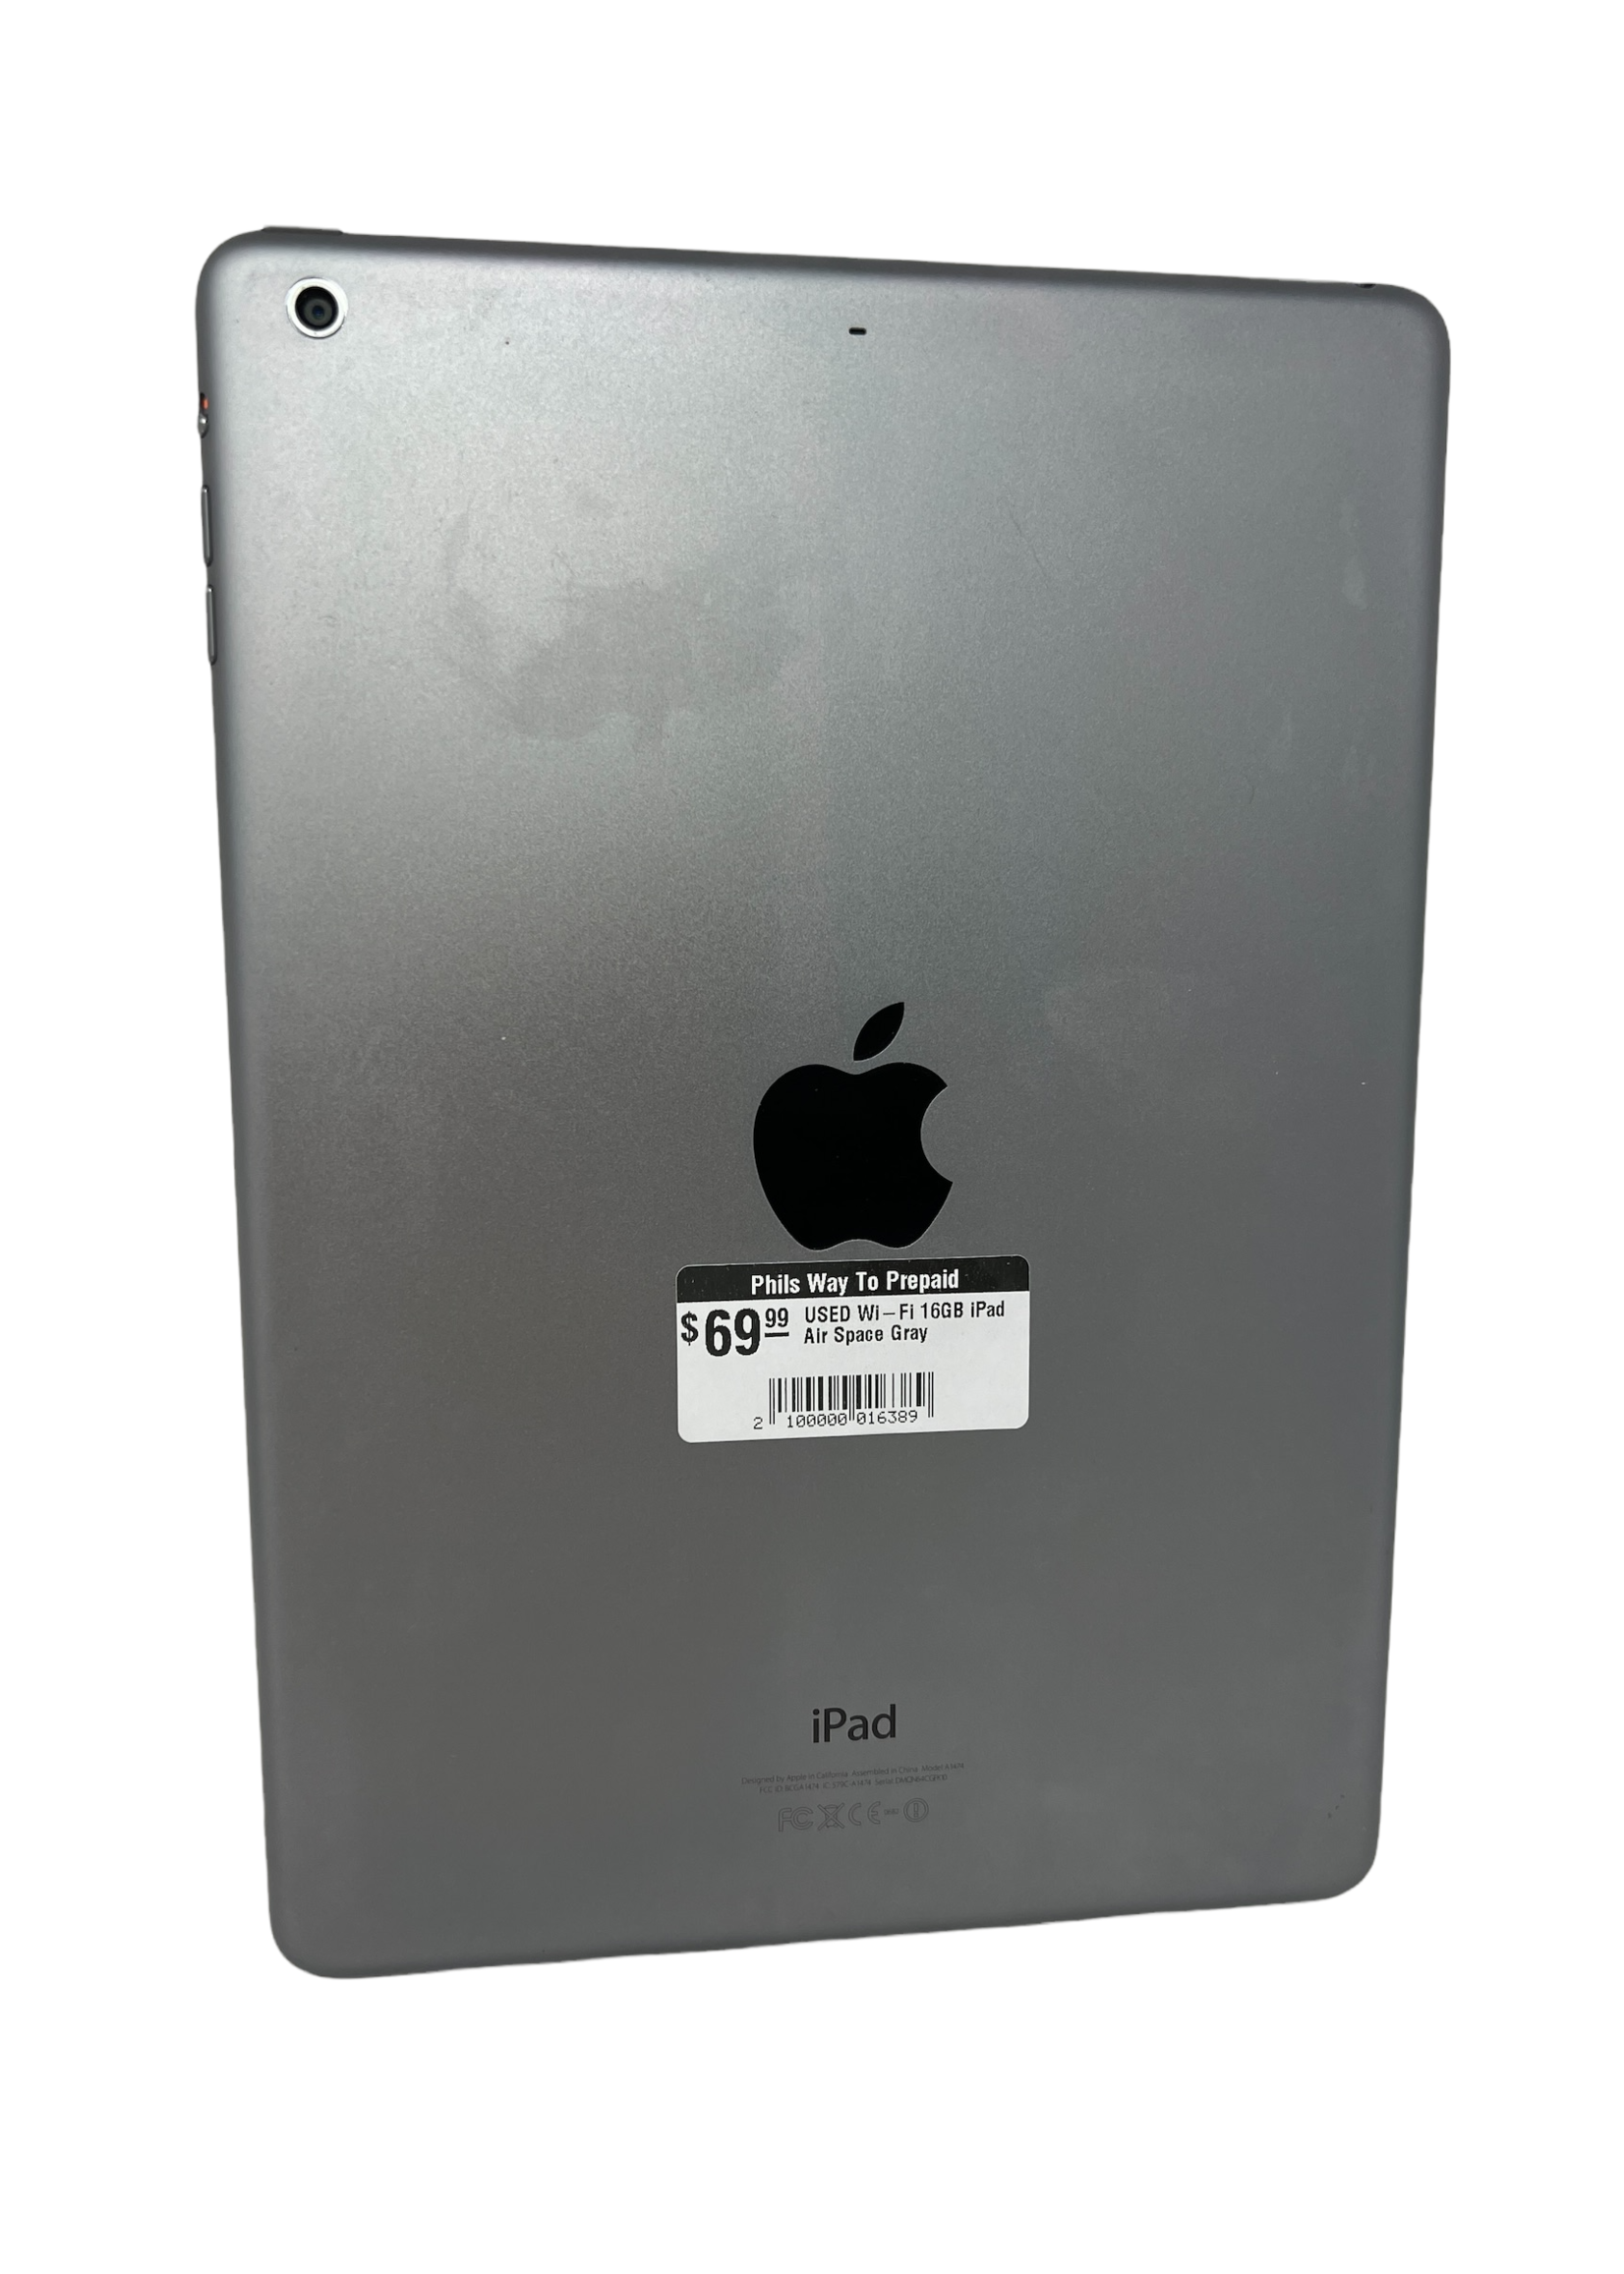 Apple USED Wi-Fi 16GB iPad Air Space Gray